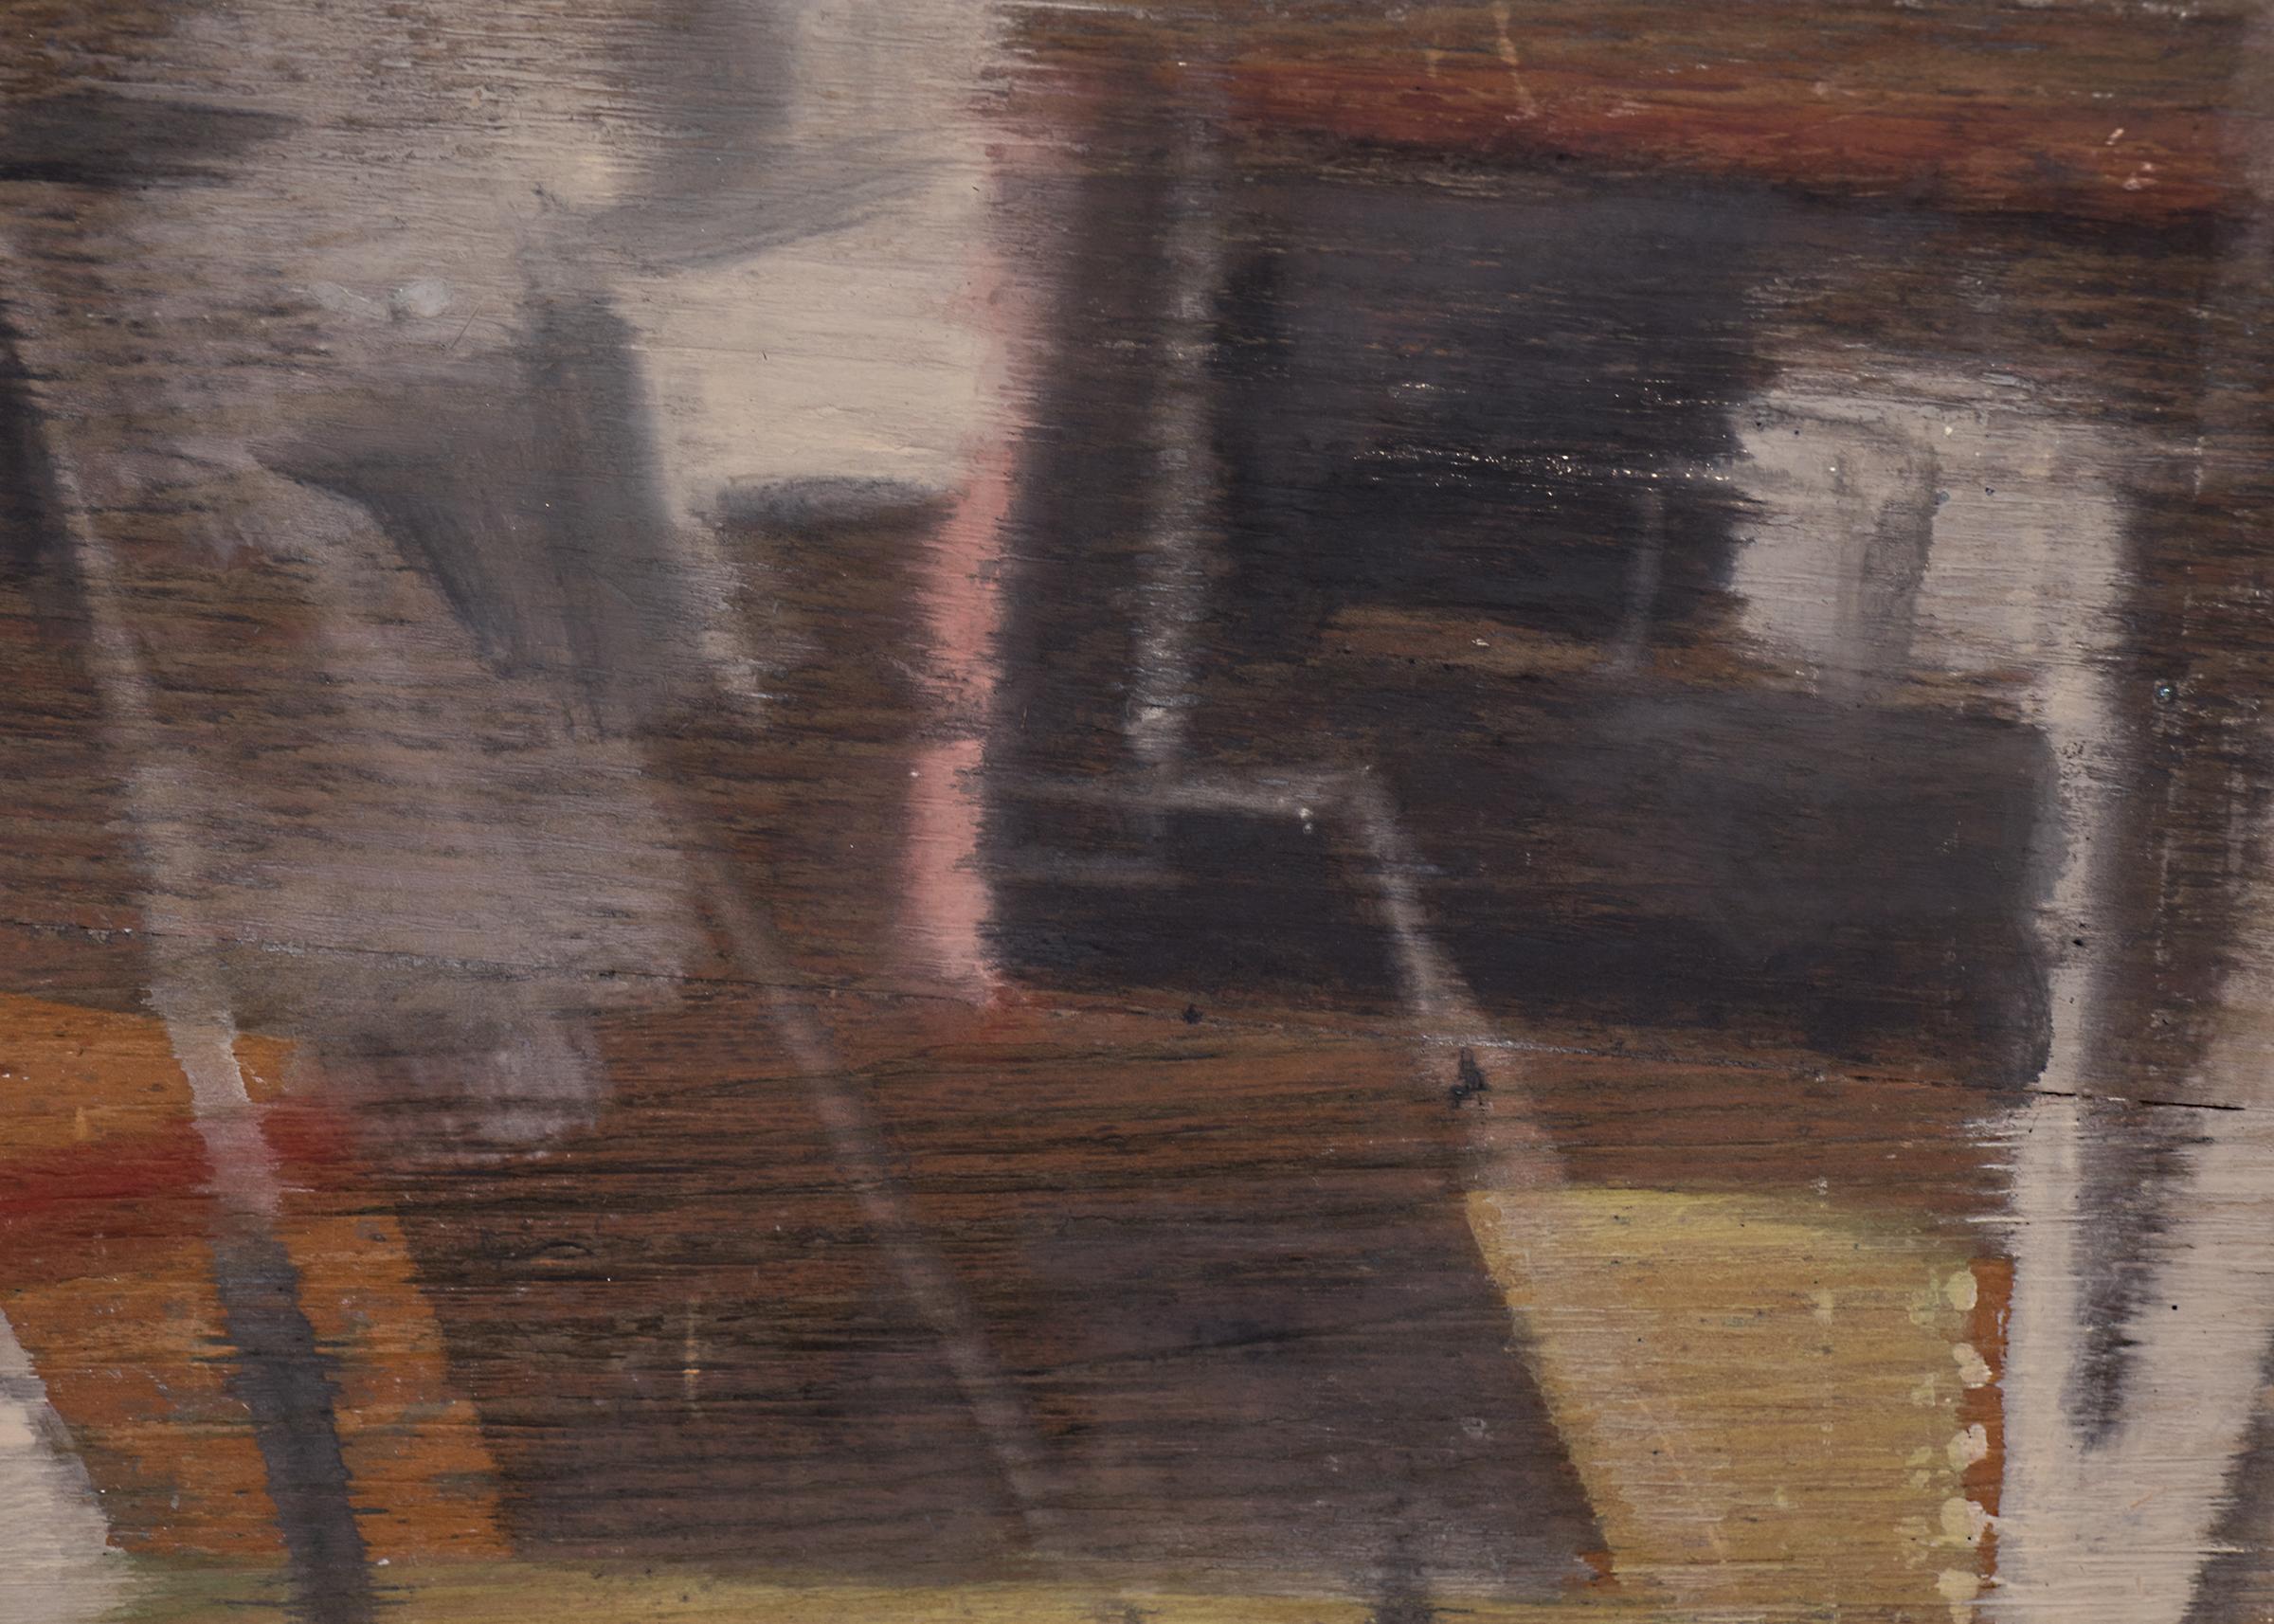 Vintage By 1950er Jahre Mitte des Jahrhunderts moderne abstrakte expressionistische Malerei von Colorado Künstler, Charles Ragland Bunnell in Schattierungen von rot, grün, weiß und schwarz. Präsentiert im Originalrahmen des Künstlers, Außenmaße